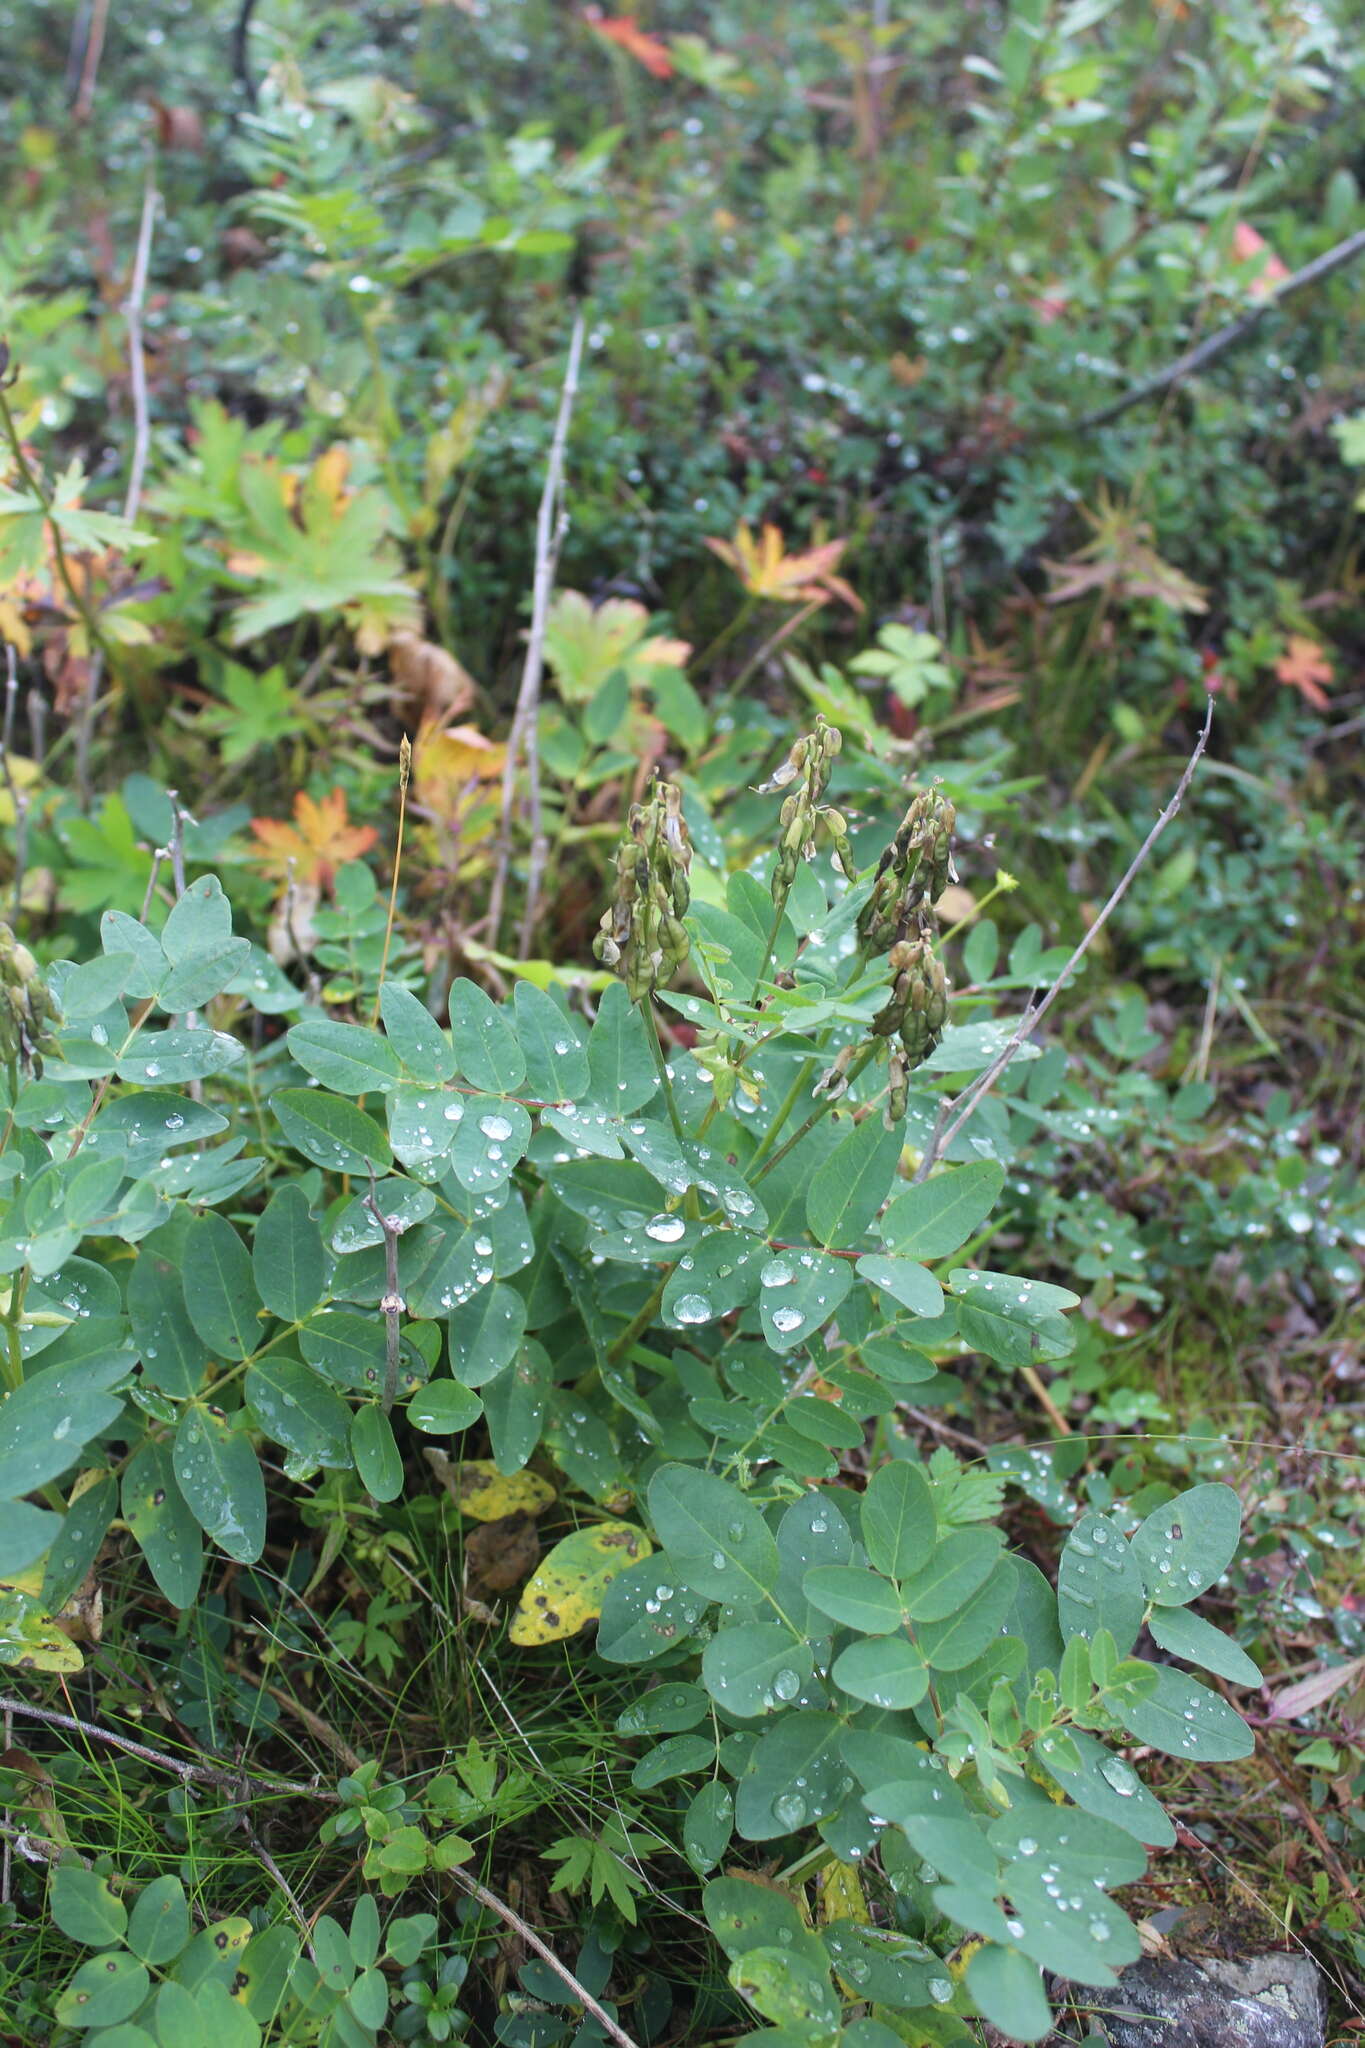 Imagem de Astragalus frigidus (L.) A. Gray